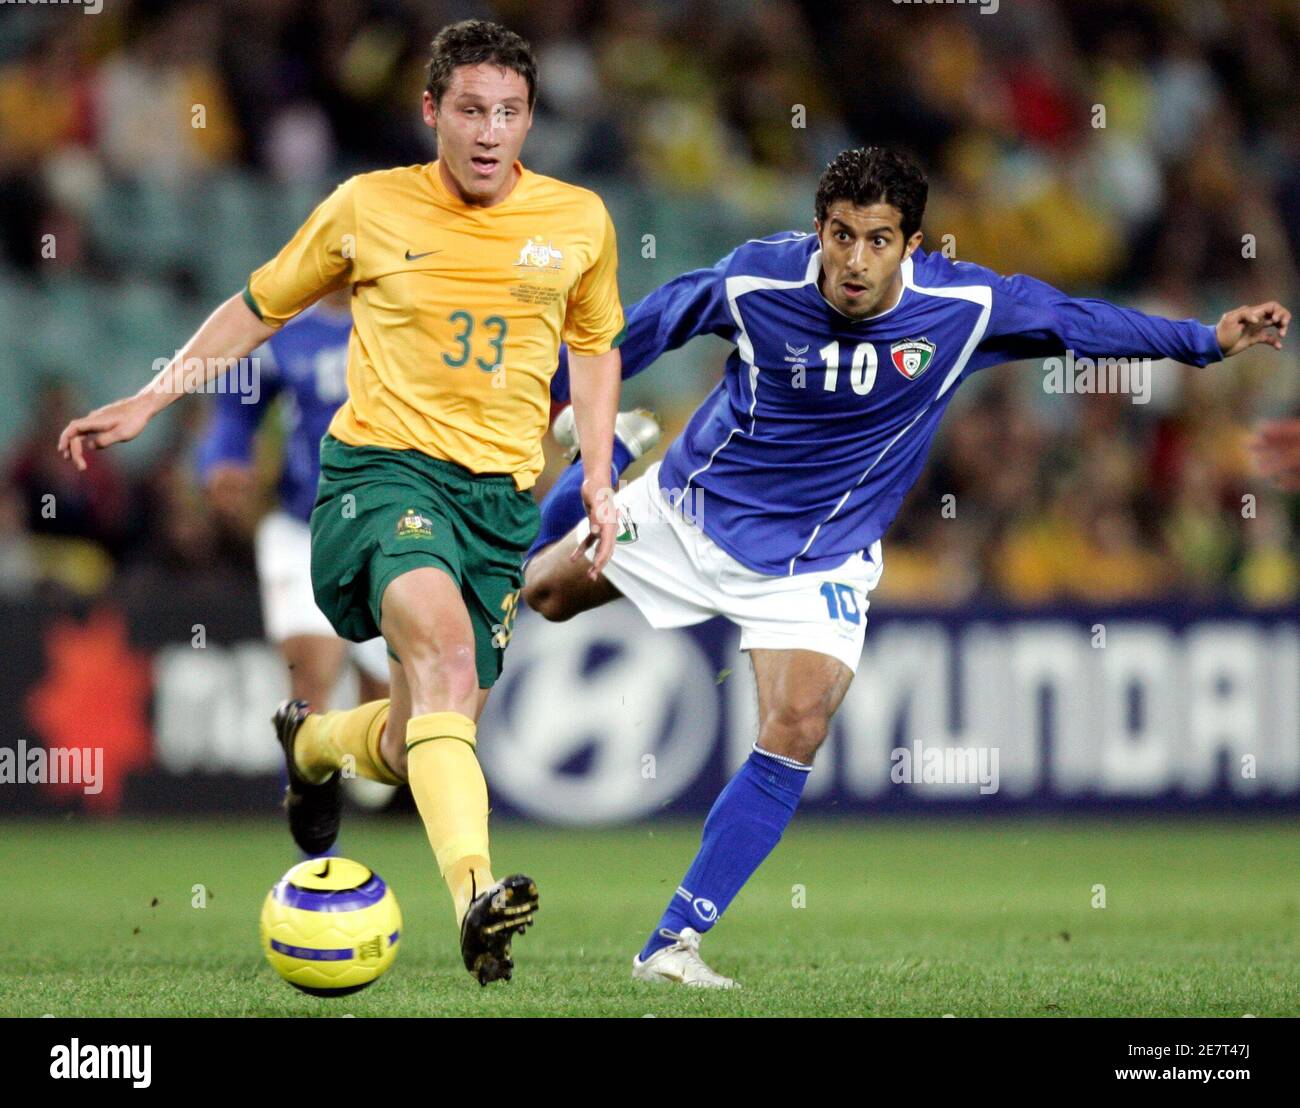 Der Australier Mark Milligan (L) sieht zu, wie der Kuwaitische Khalaf Al Mutairi beim Asian Cup Qualifying Match in Sydney am 16. August 2006 den Ball an ihm vorbeischießt. REUTERS/will Burgess (AUSTRALIEN) Stockfoto